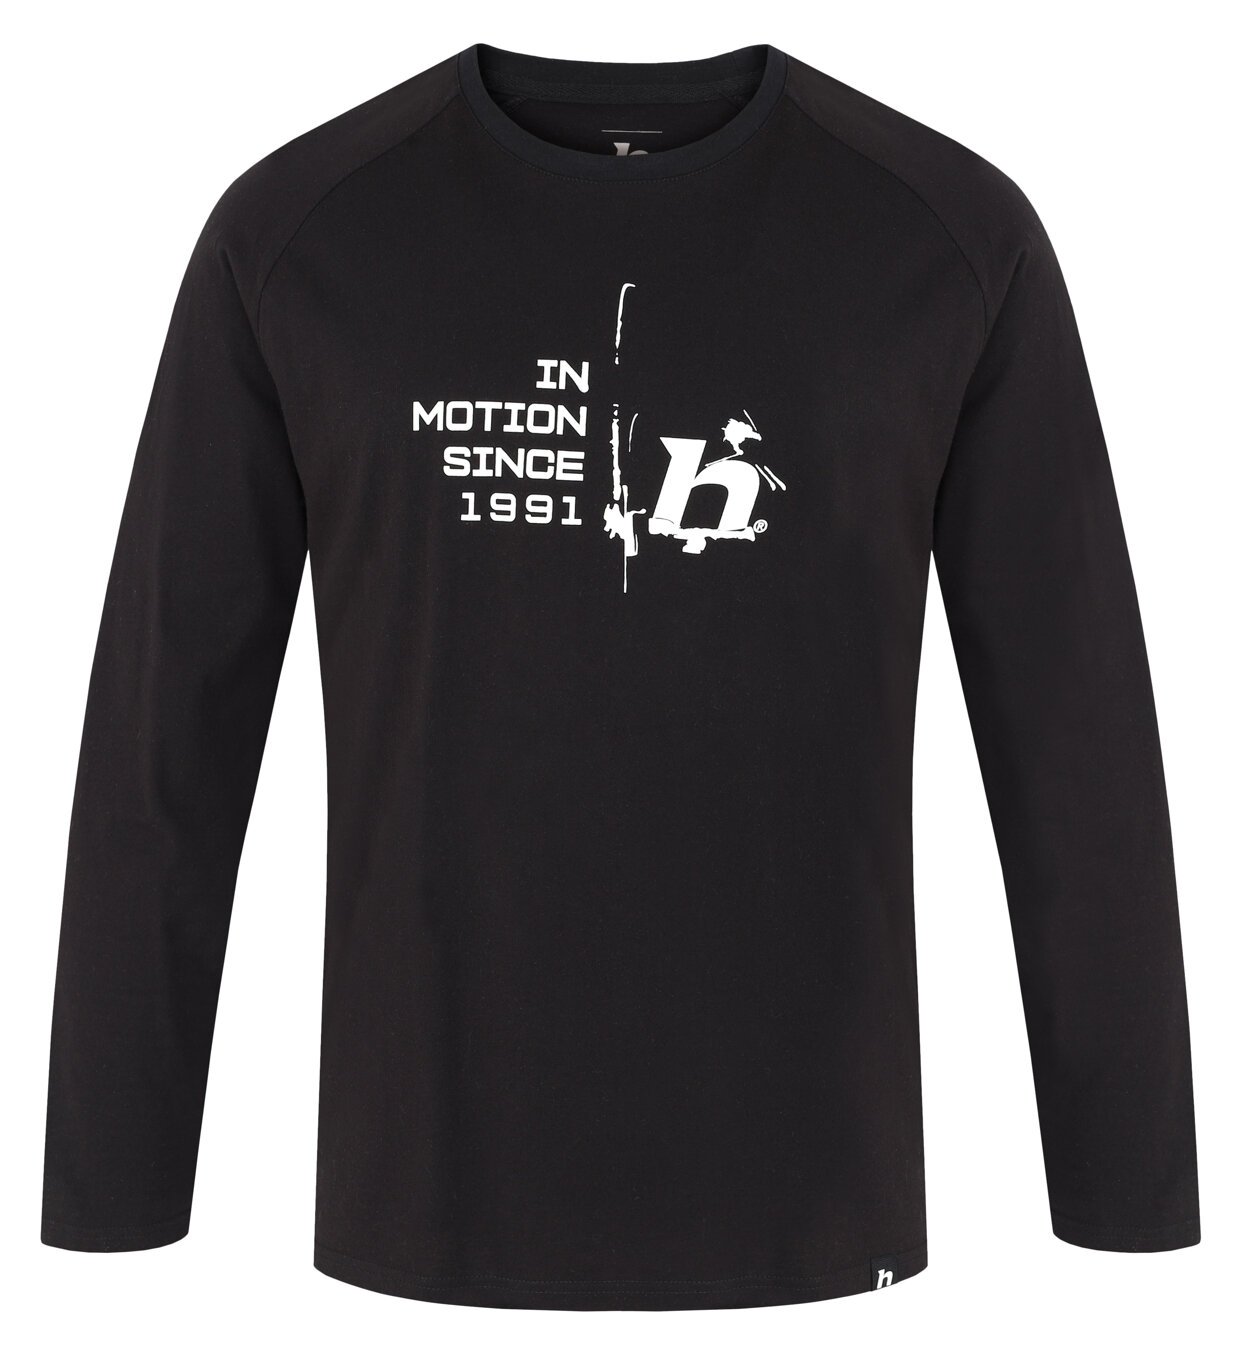 Hanes Mens 100% Cotton Authentic-T T-Shirt Crew Neck T Shirt